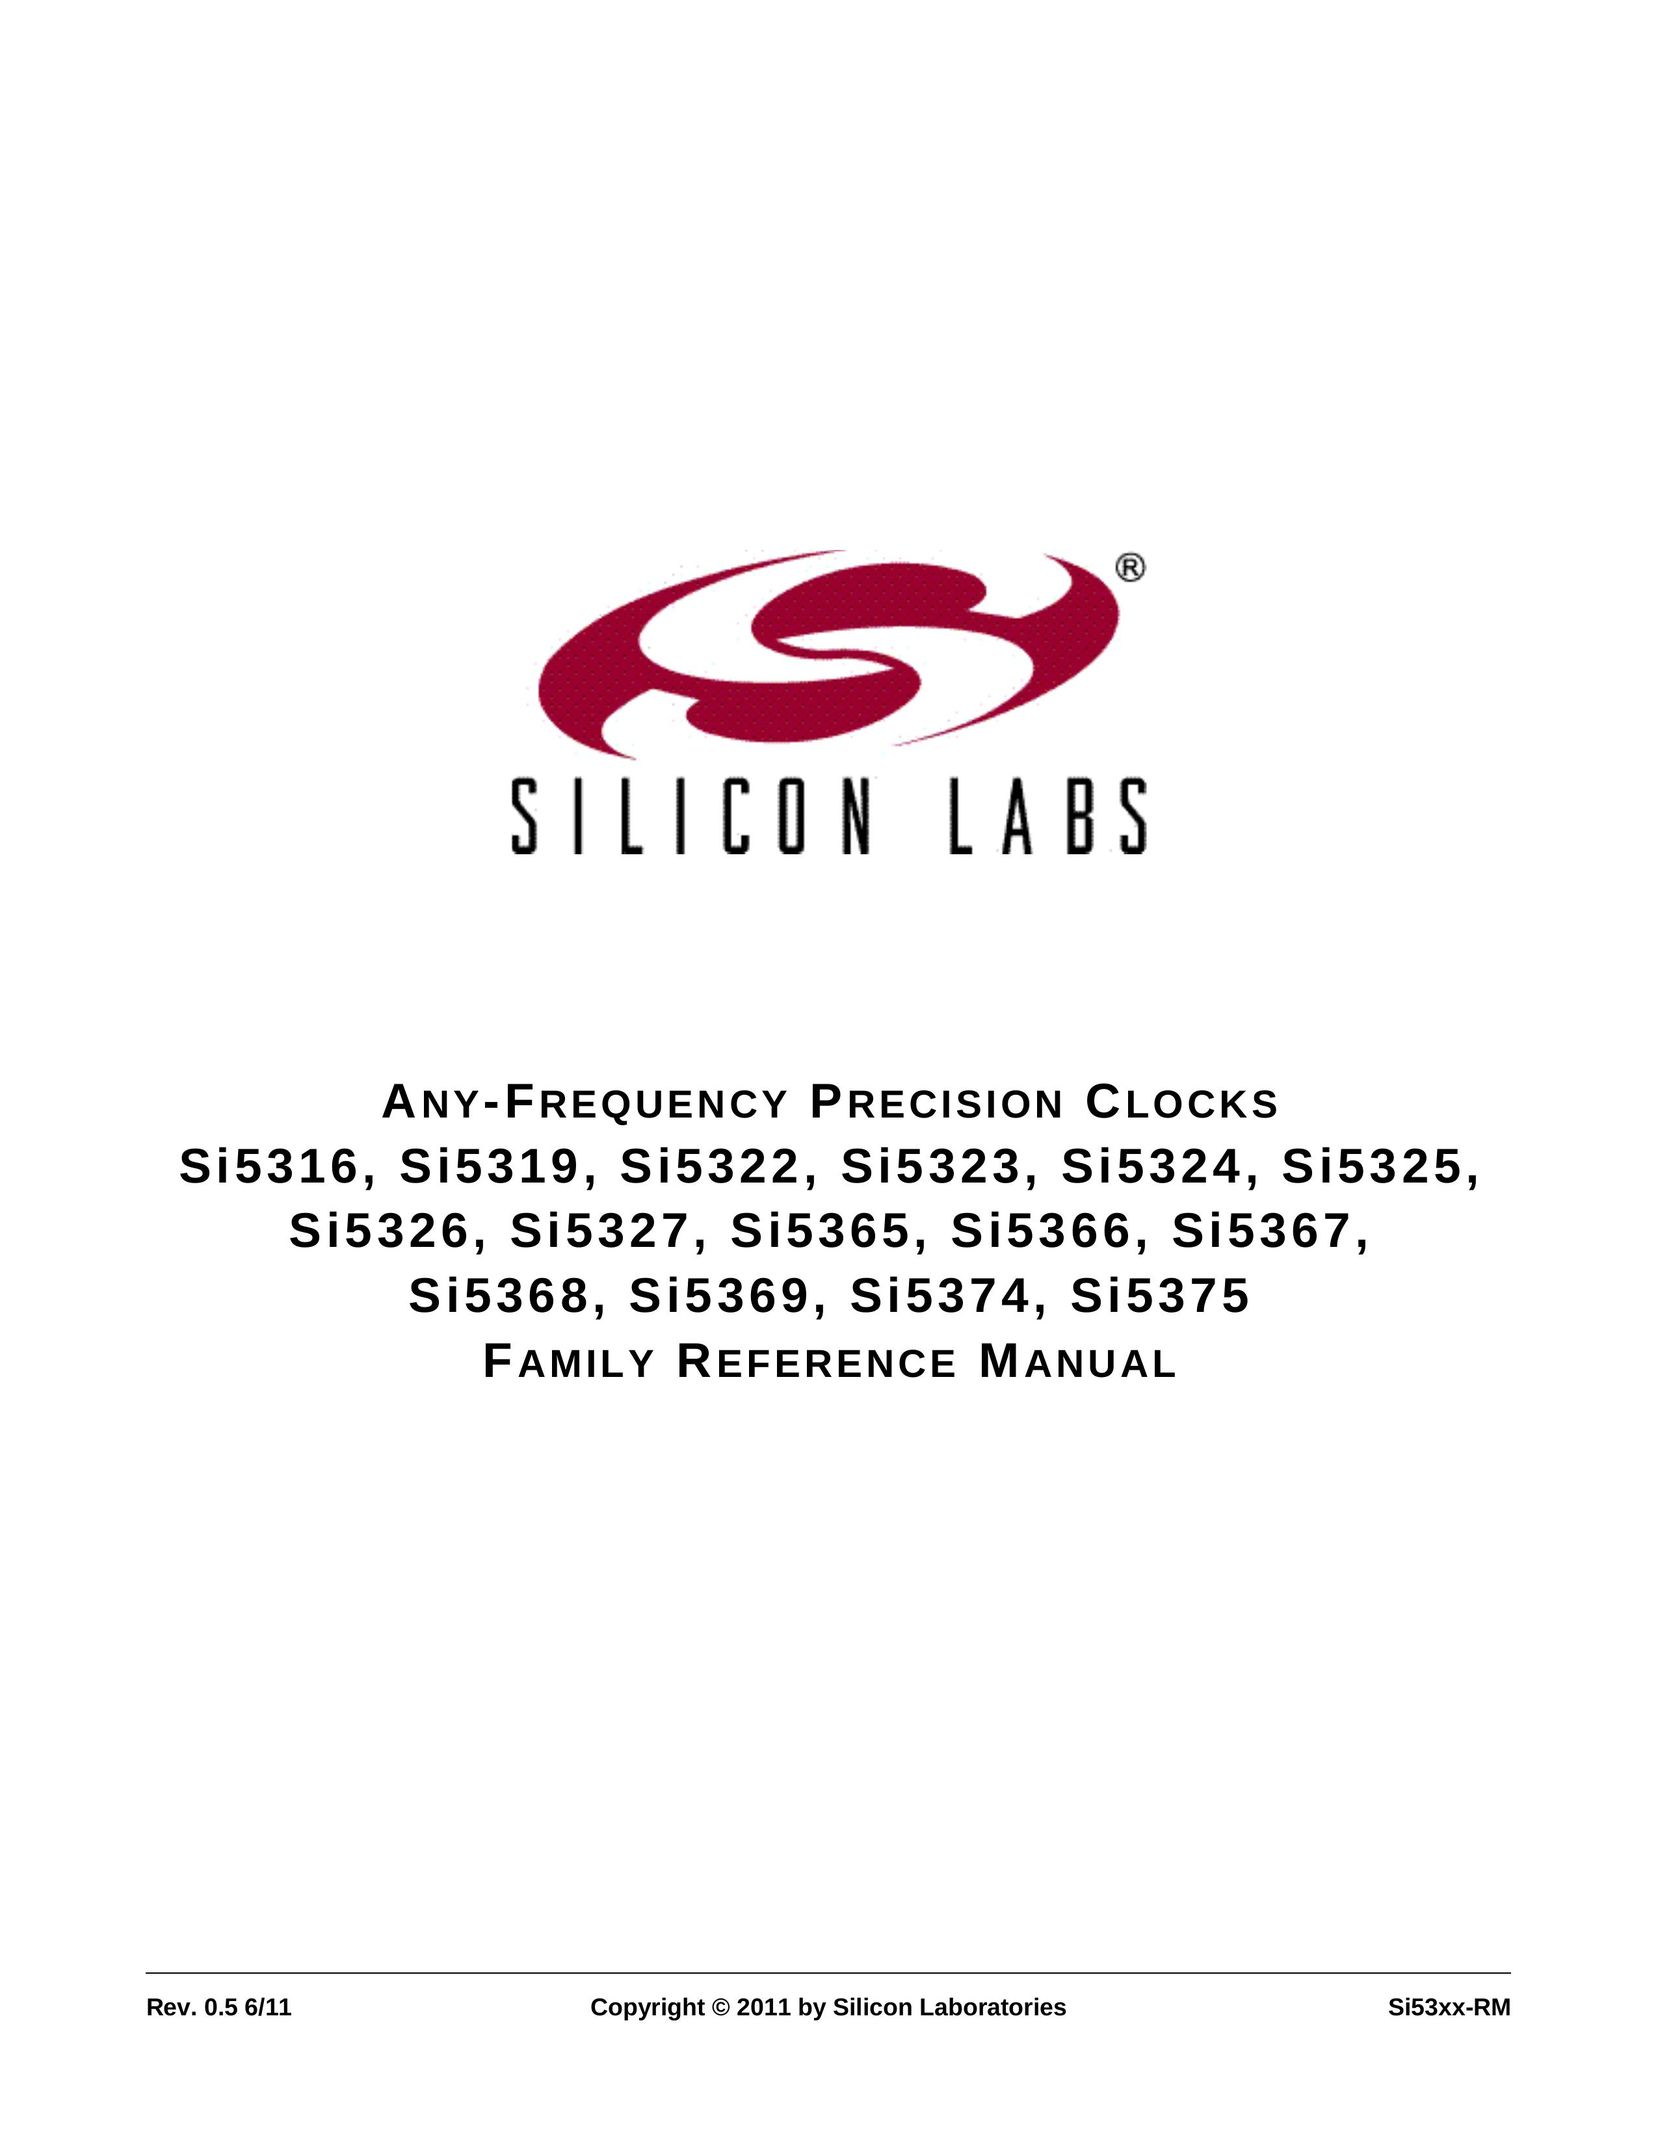 Silicon Laboratories SI5375 Clock User Manual